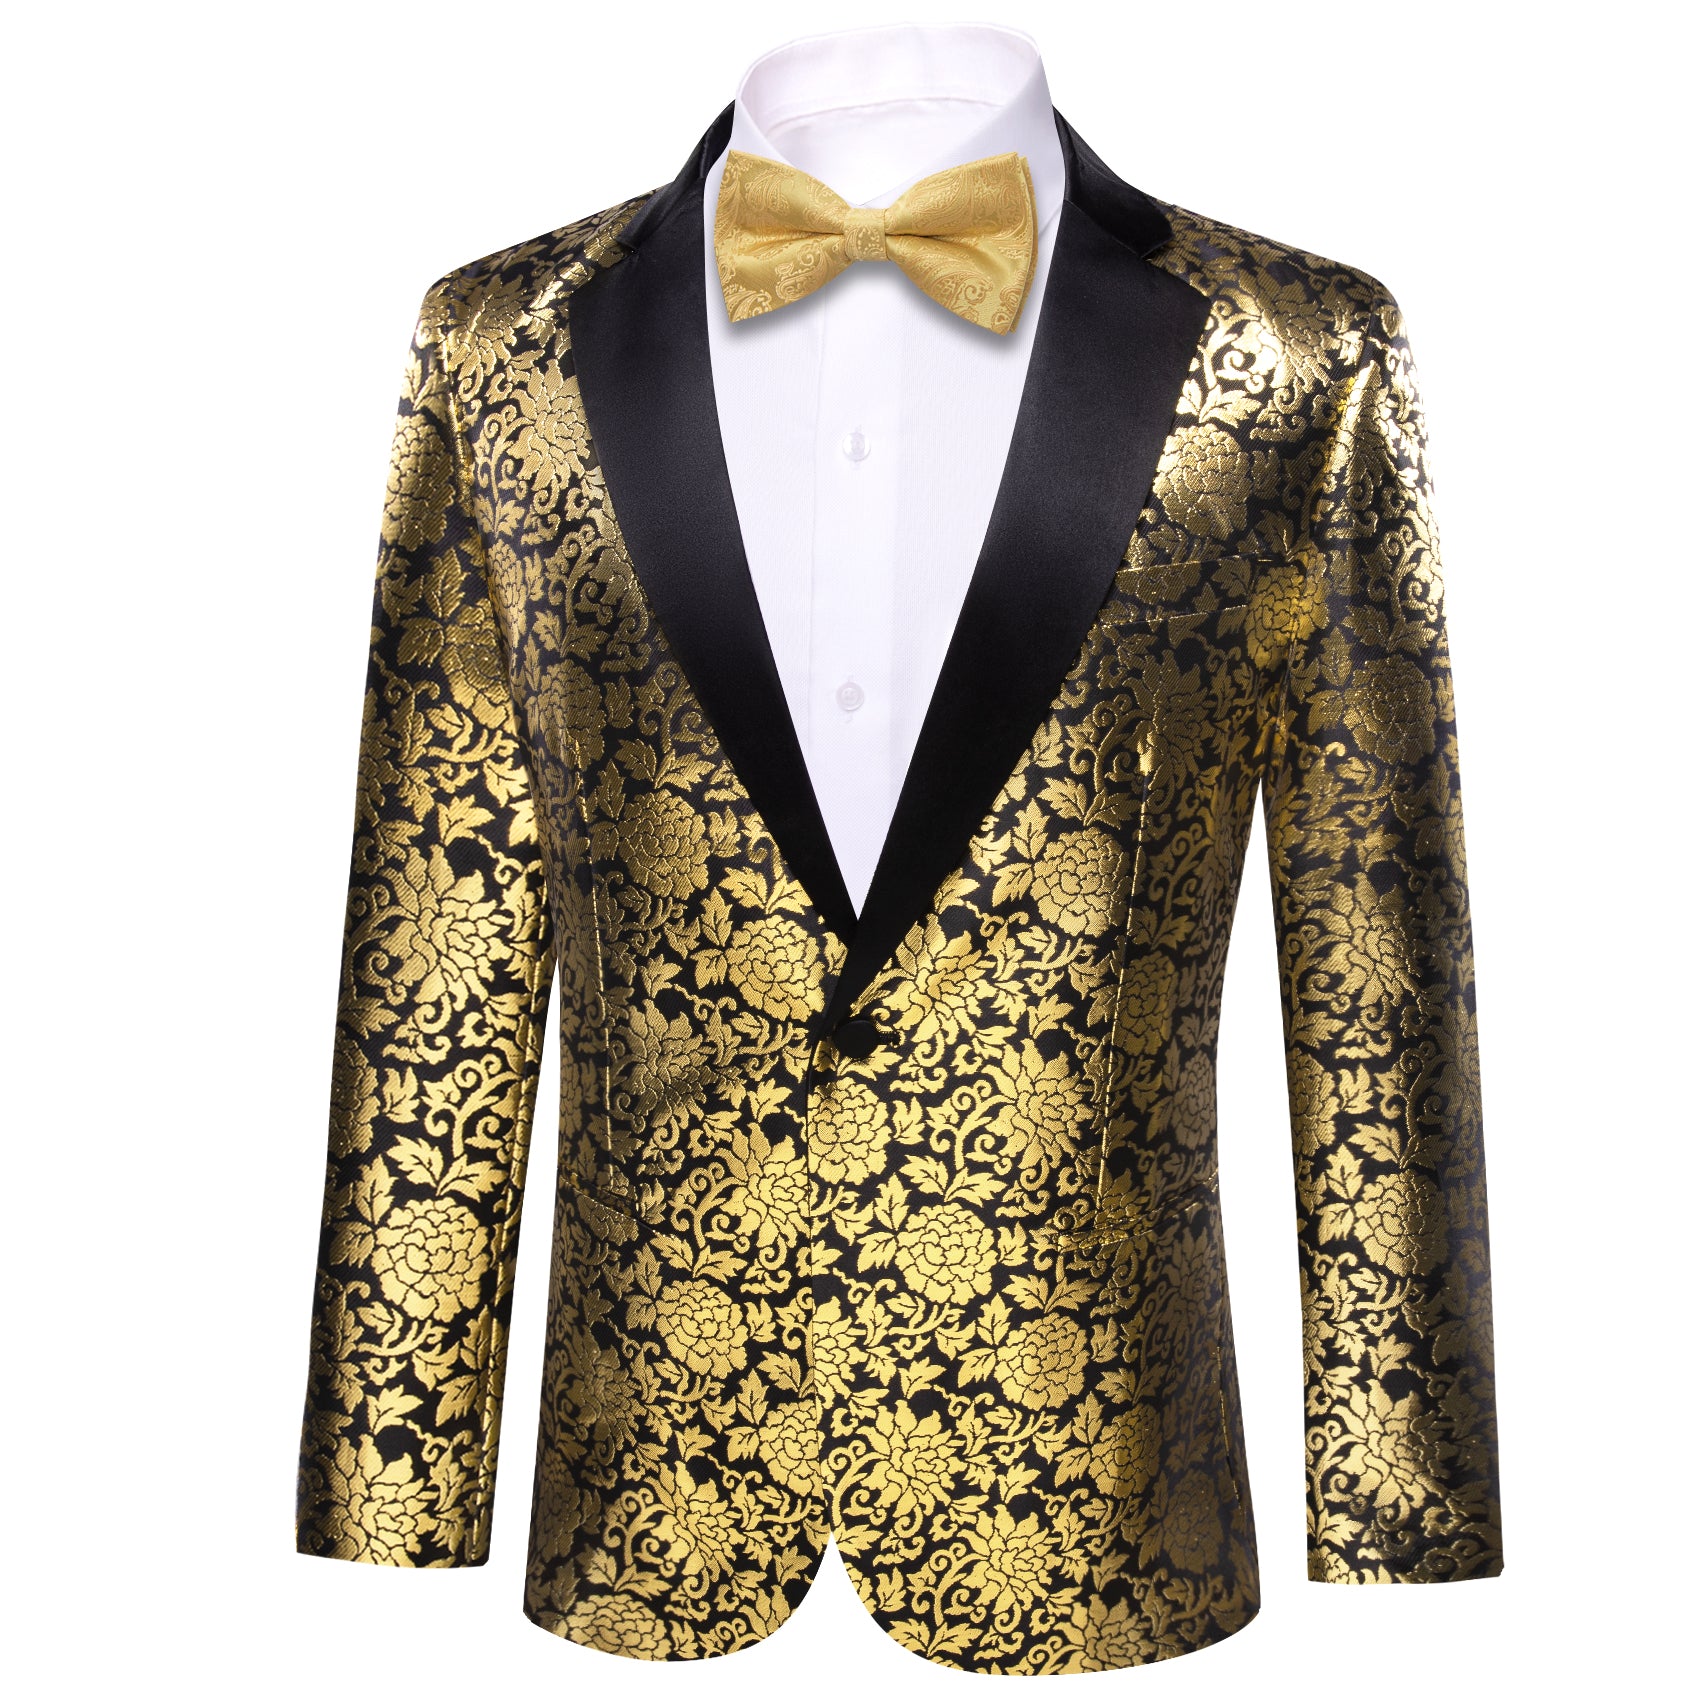 Barry.wang Men's Floral Suit Black Gold Notched Collar Suit Dress Party